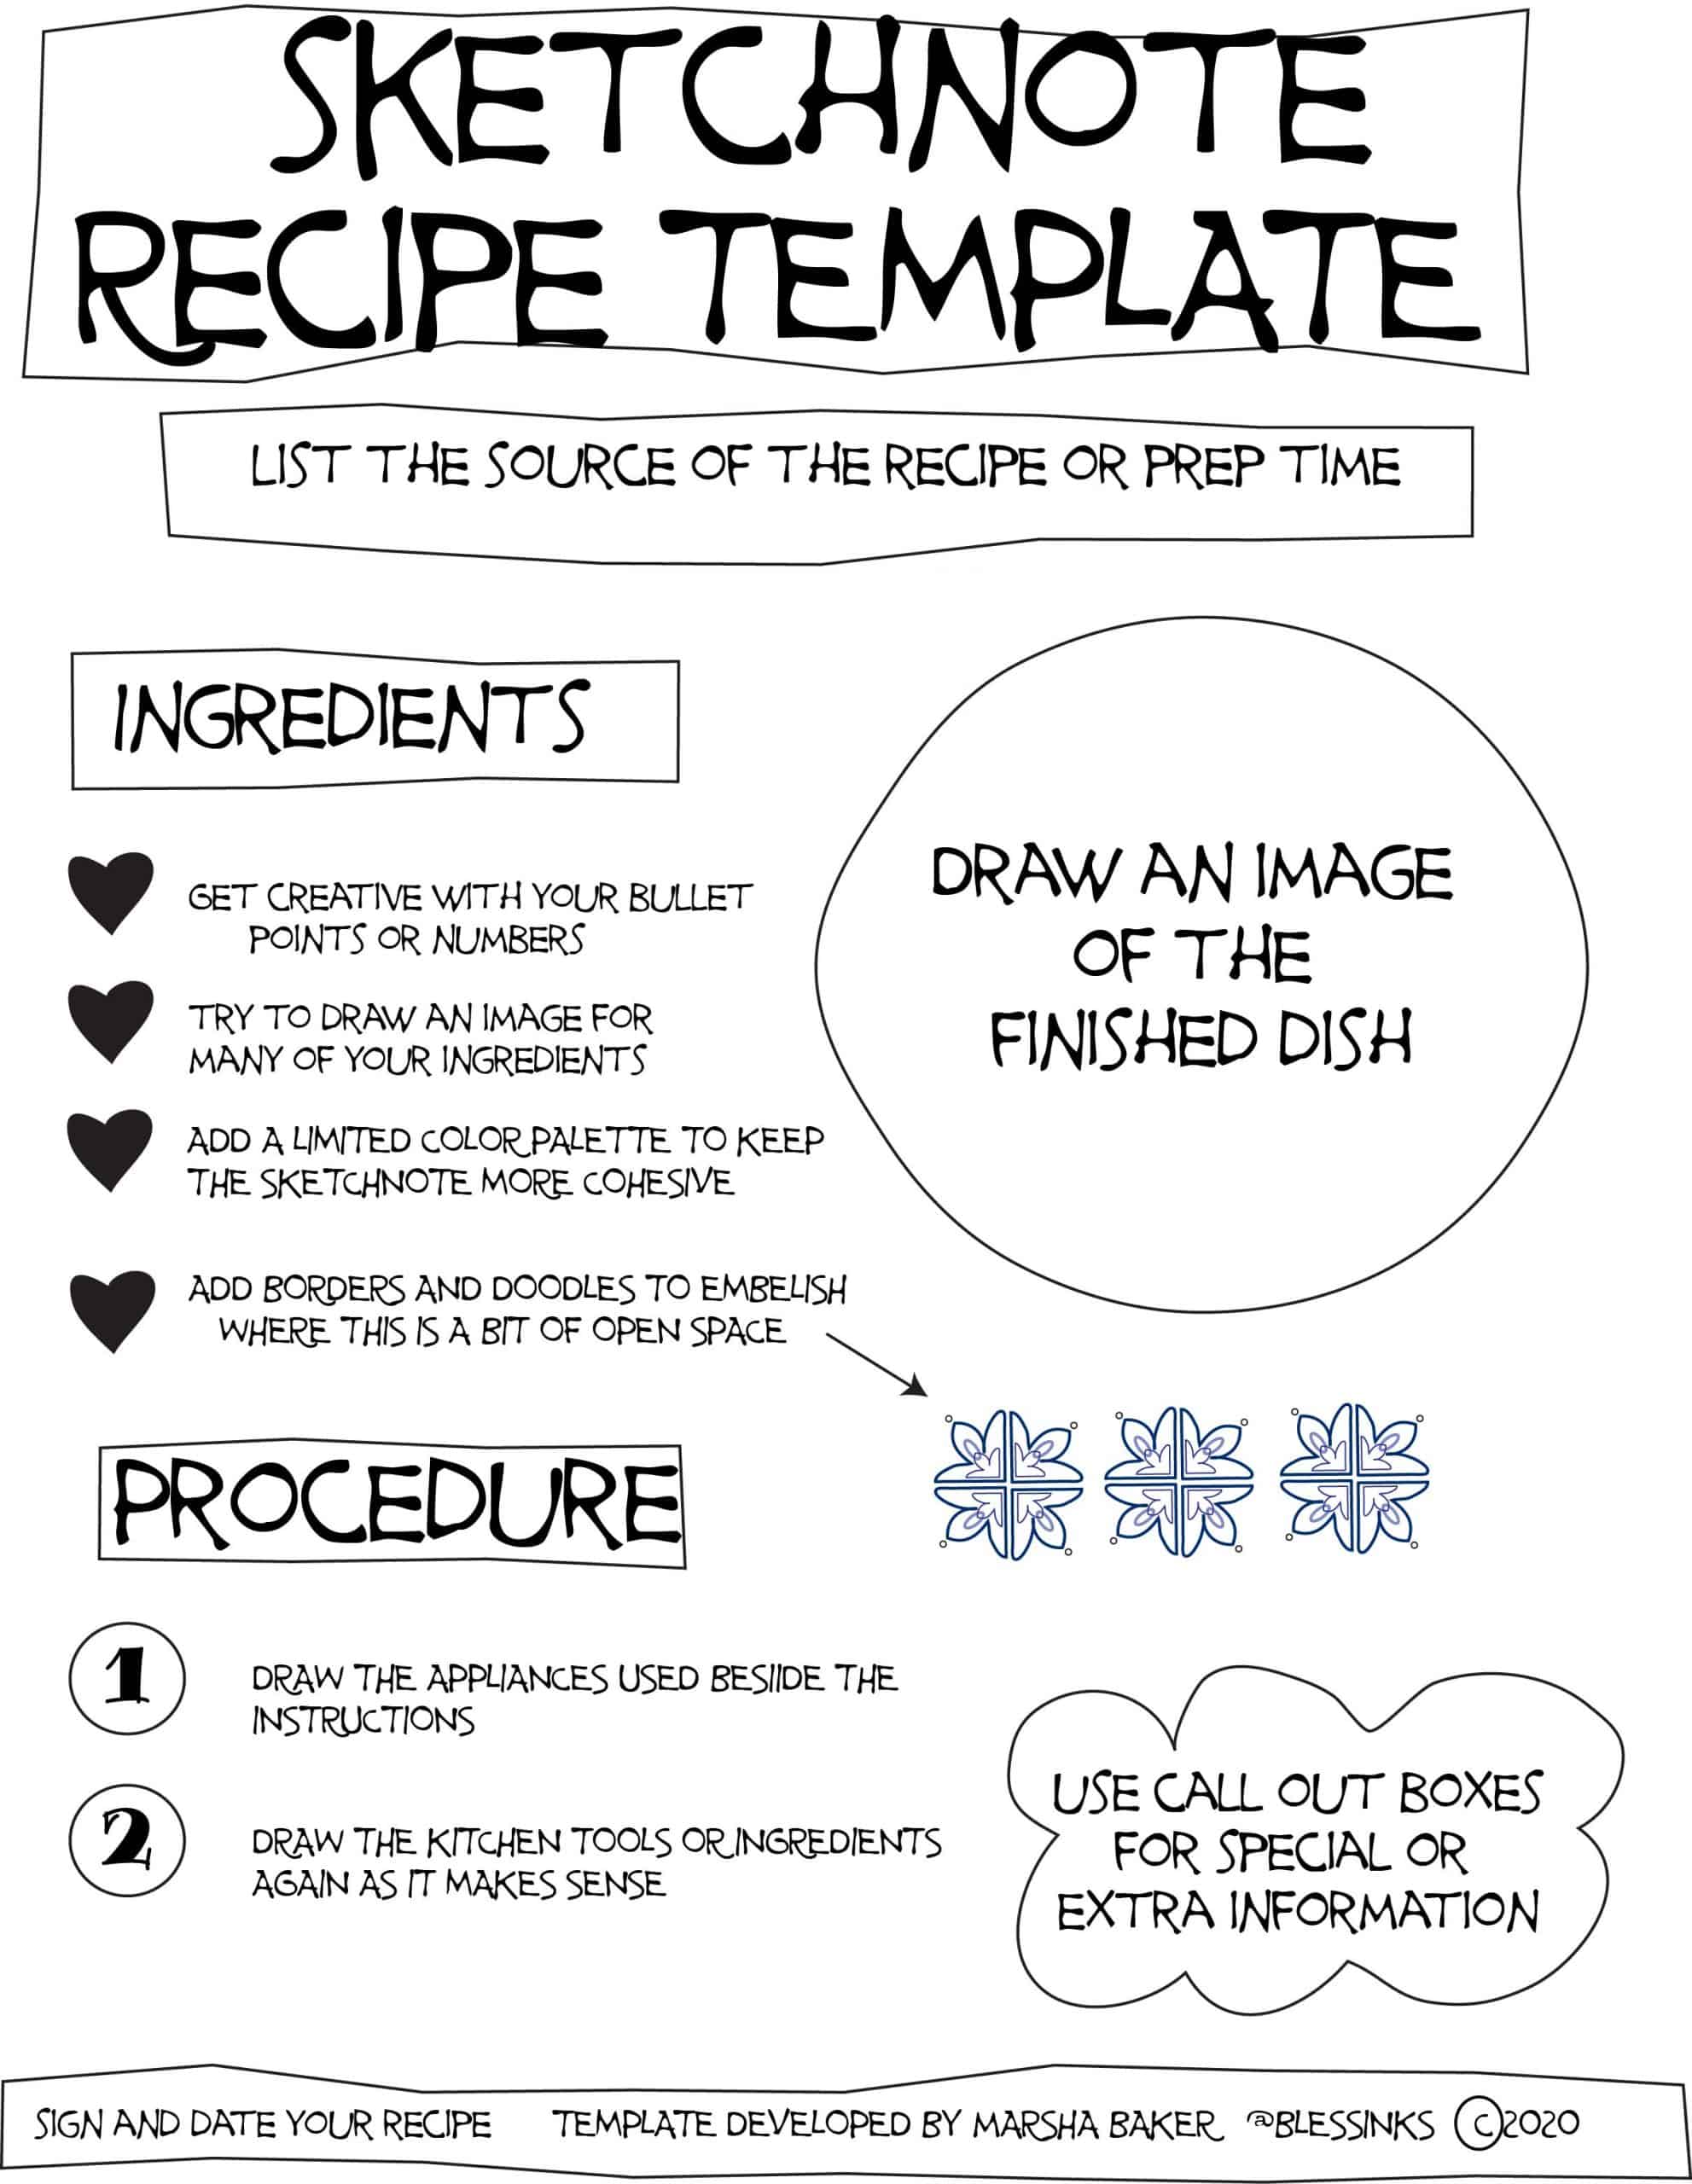 Sketchnote recipe template